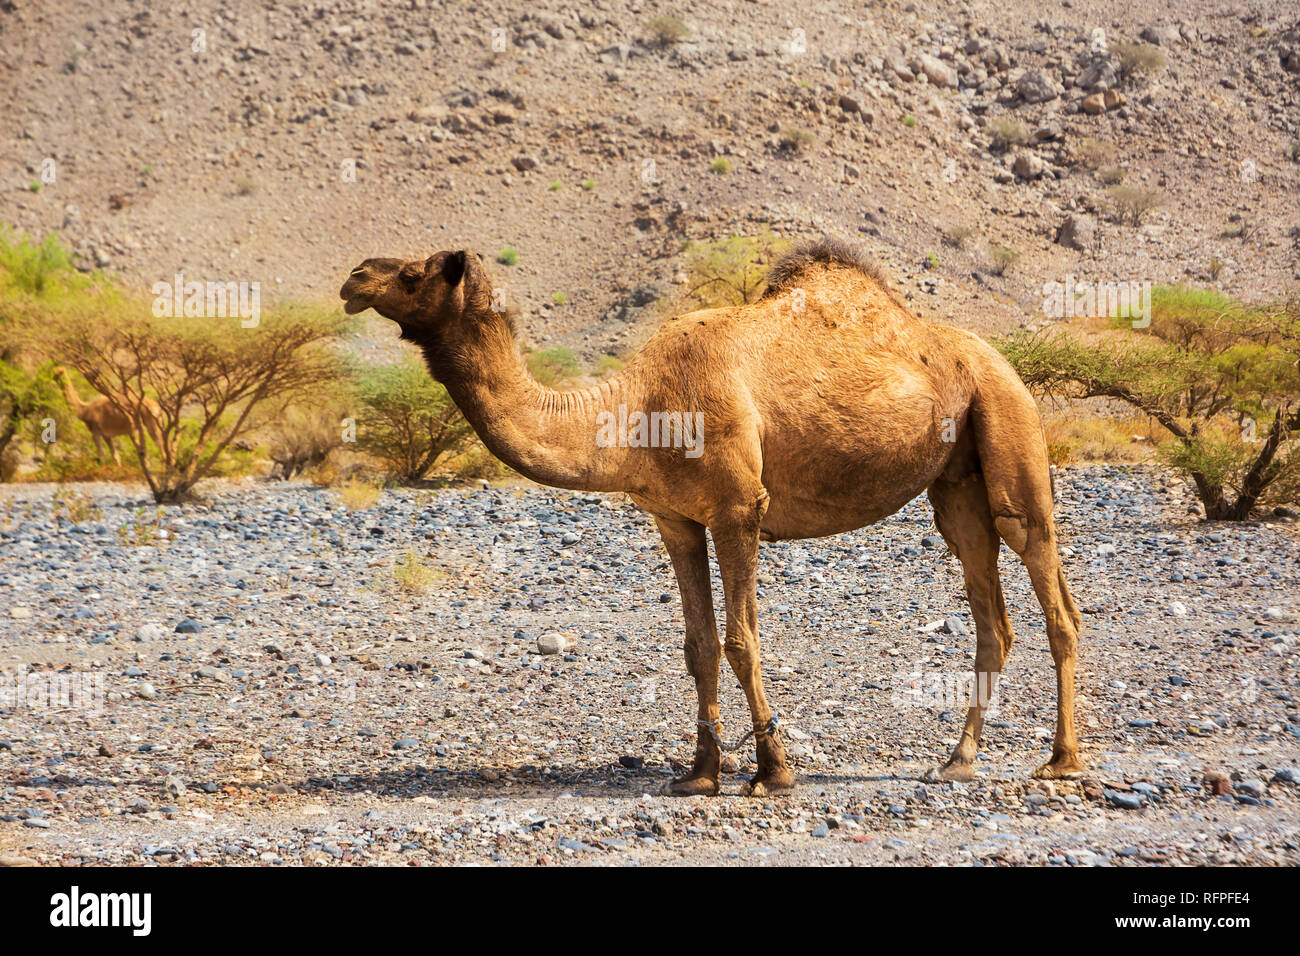 Dromedario con piernas piernas en el desierto rocoso de Omán Foto de stock